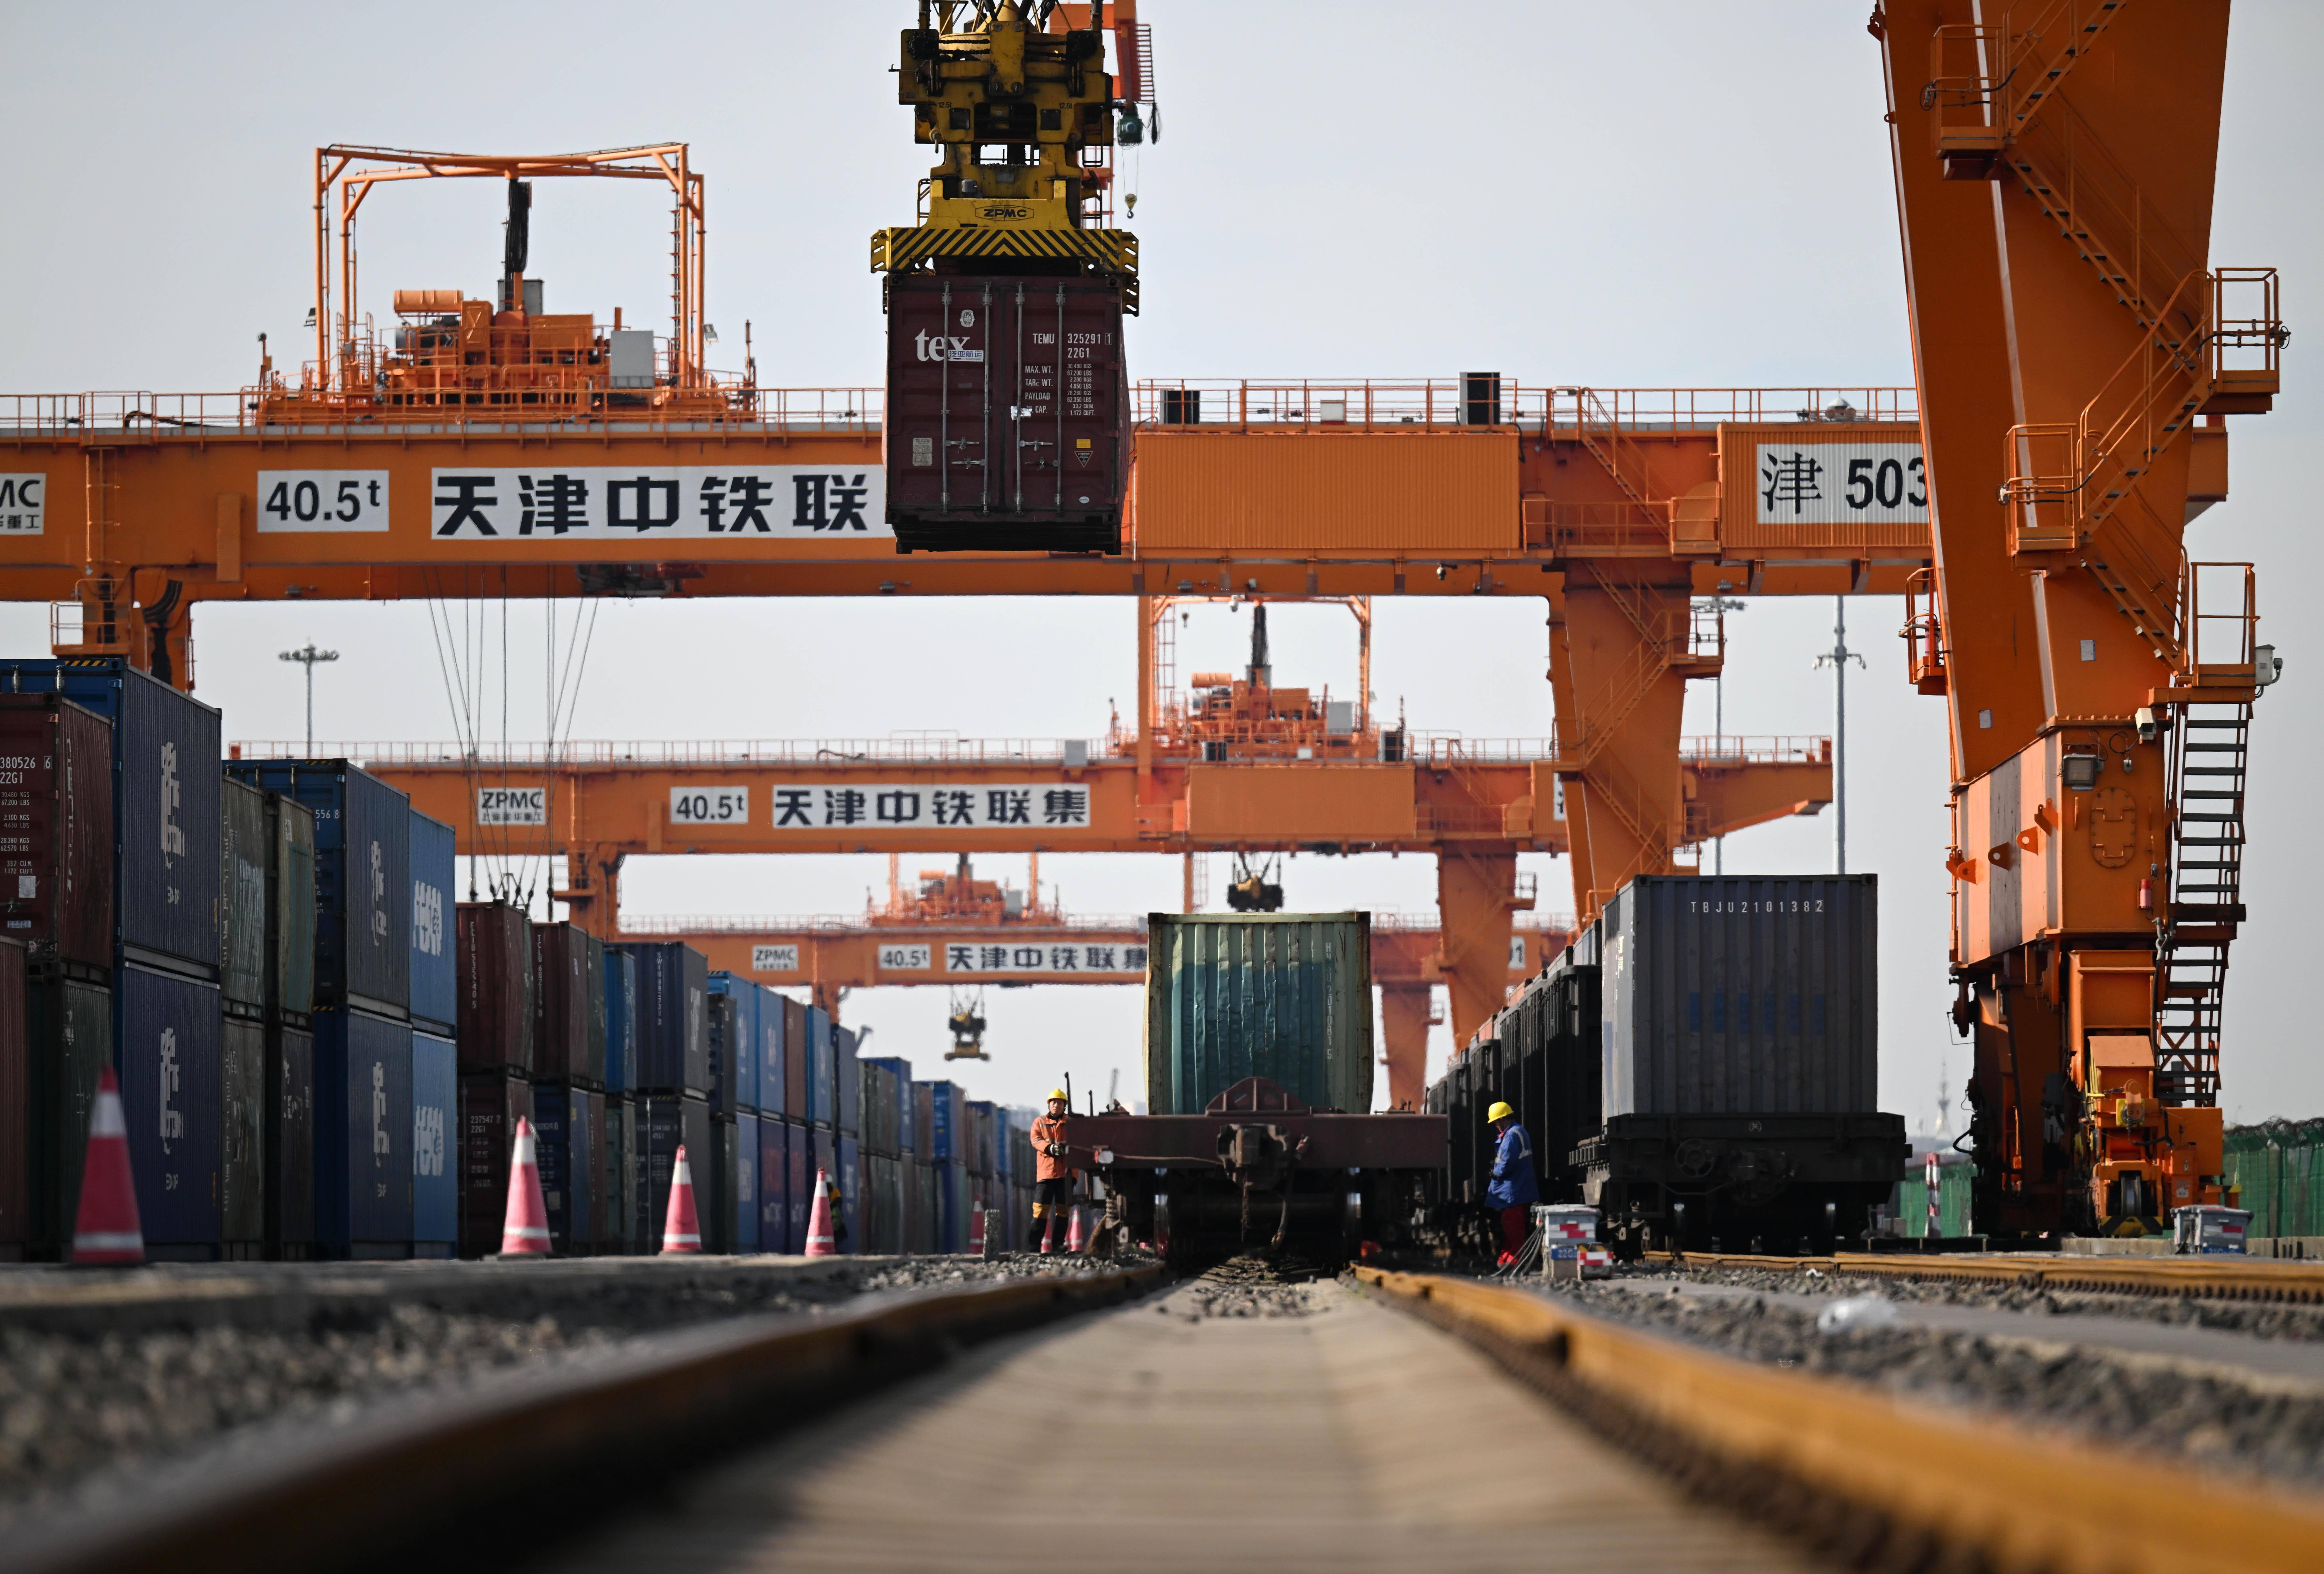 (经济)天津港:发展多式联运 提升港口集聚辐射能力